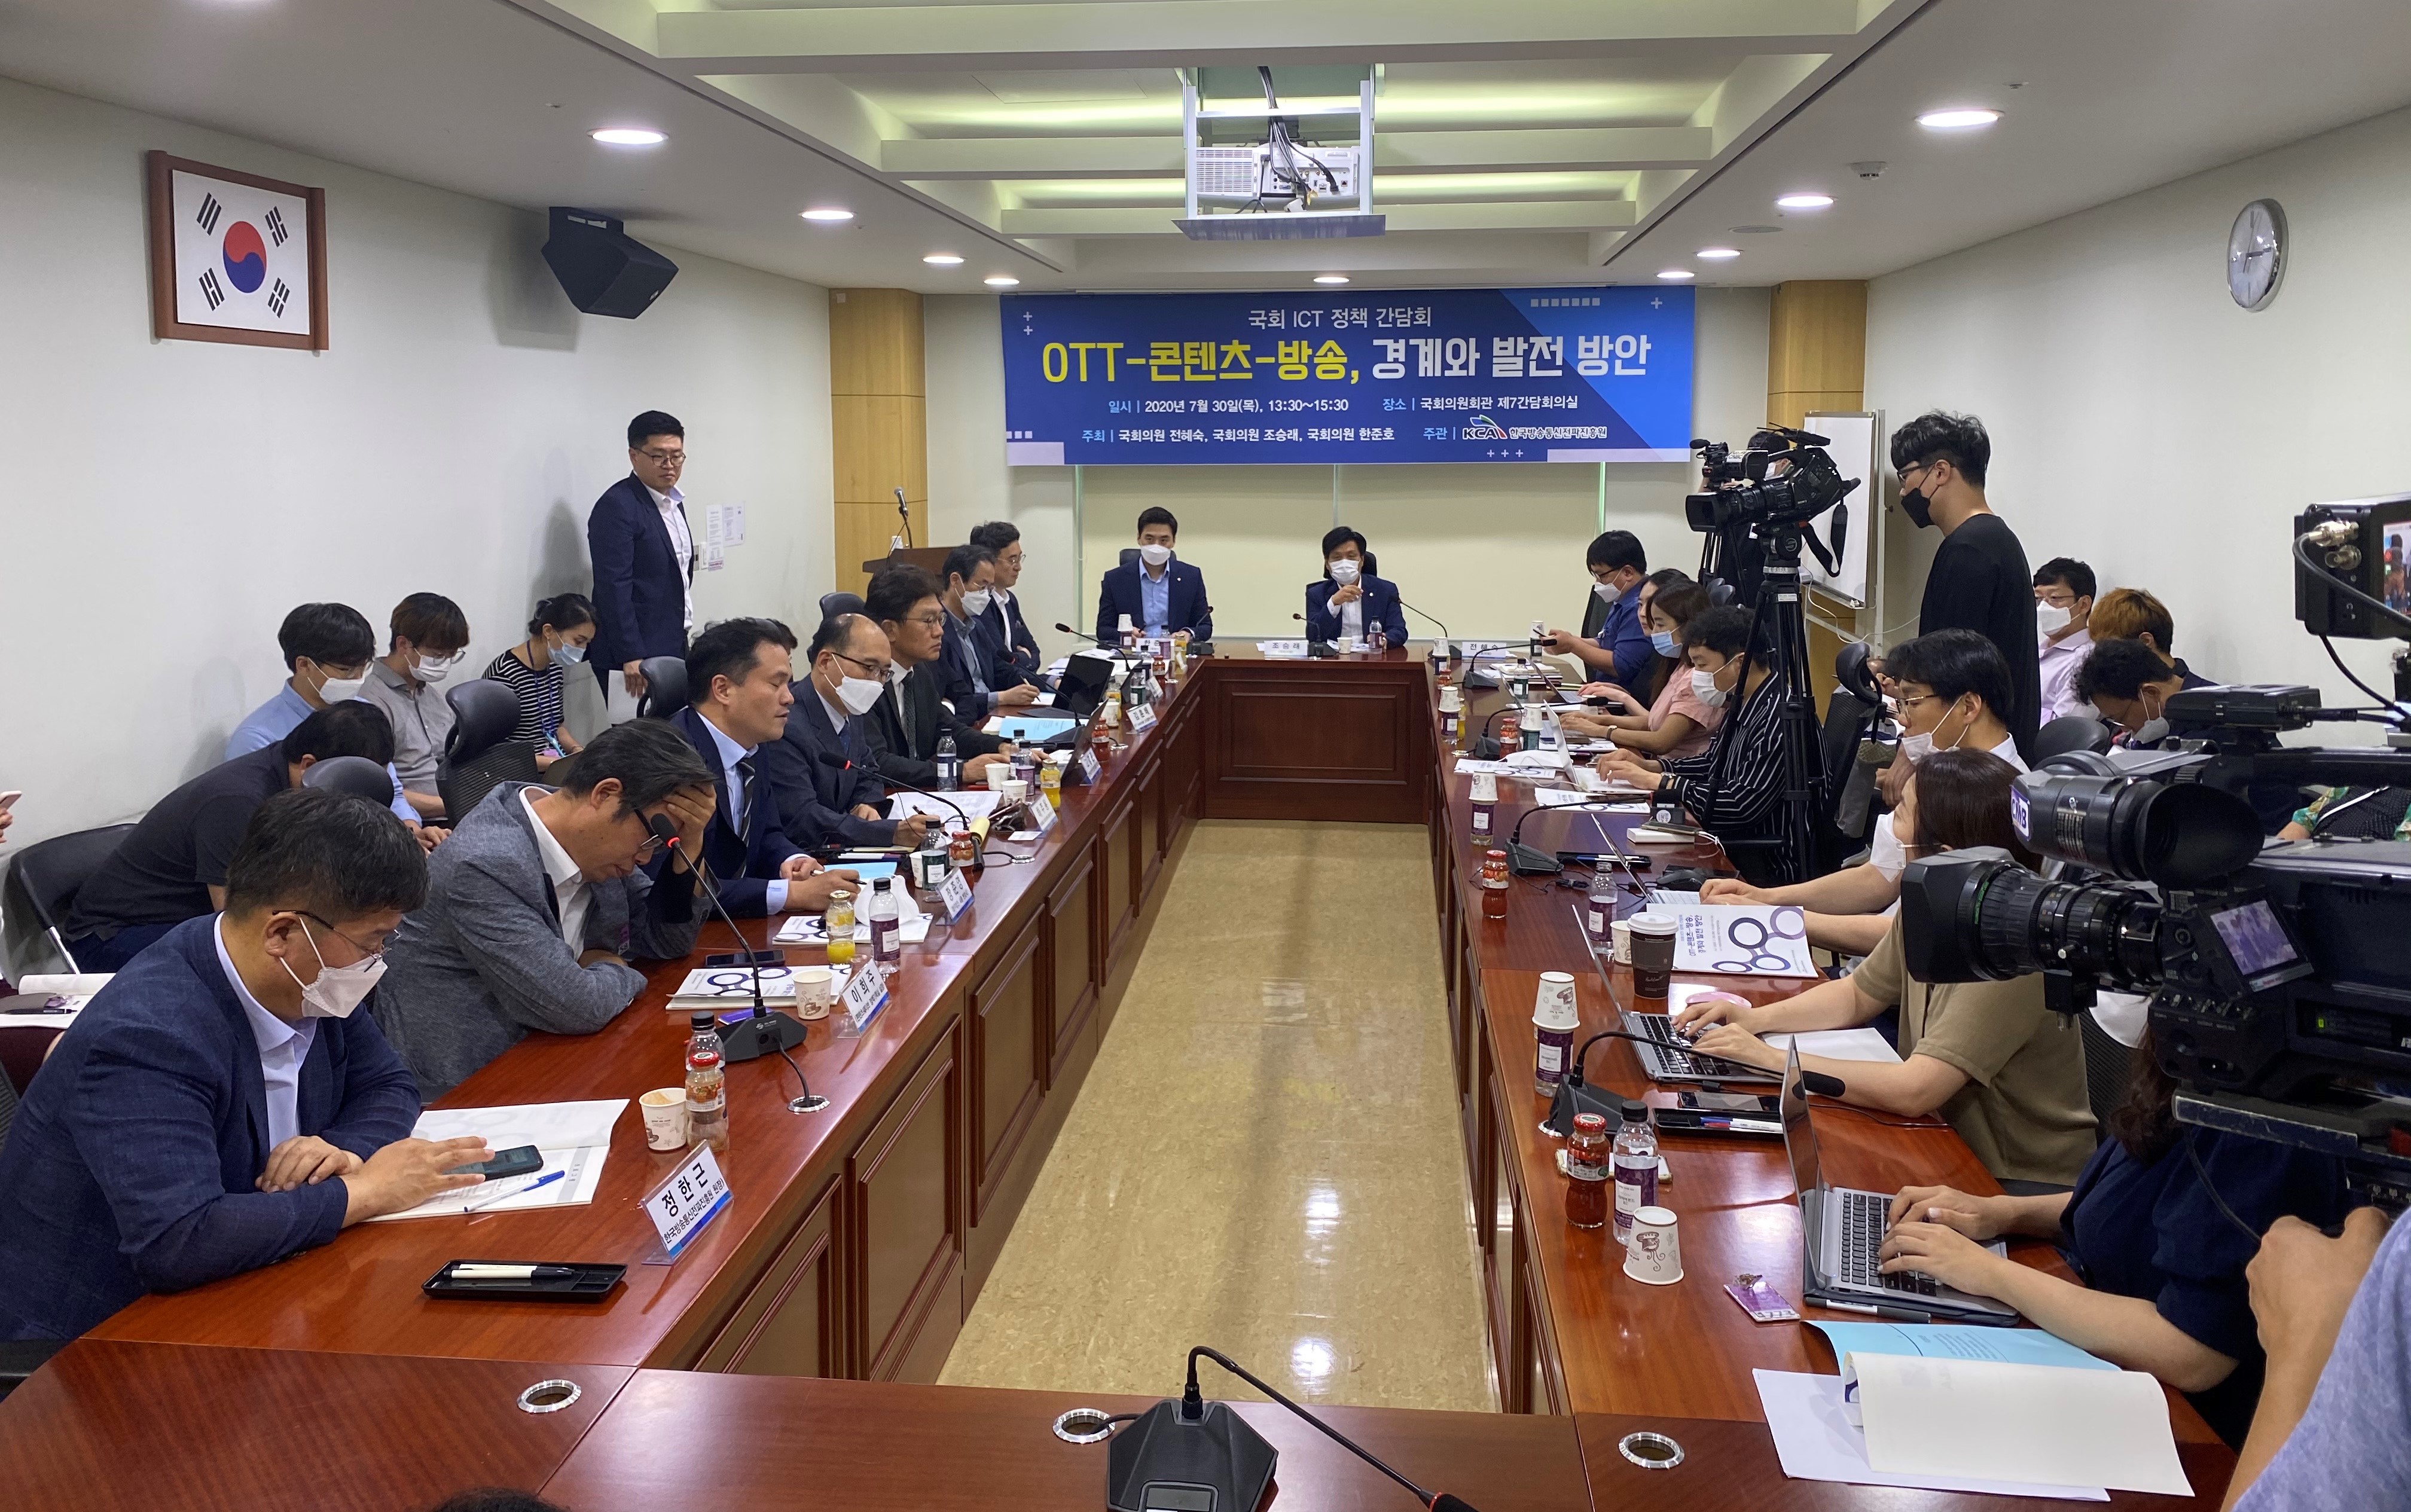 OTT-콘텐츠-방송, 경계와 발전방안 국회 ICT 정책간담회 개최